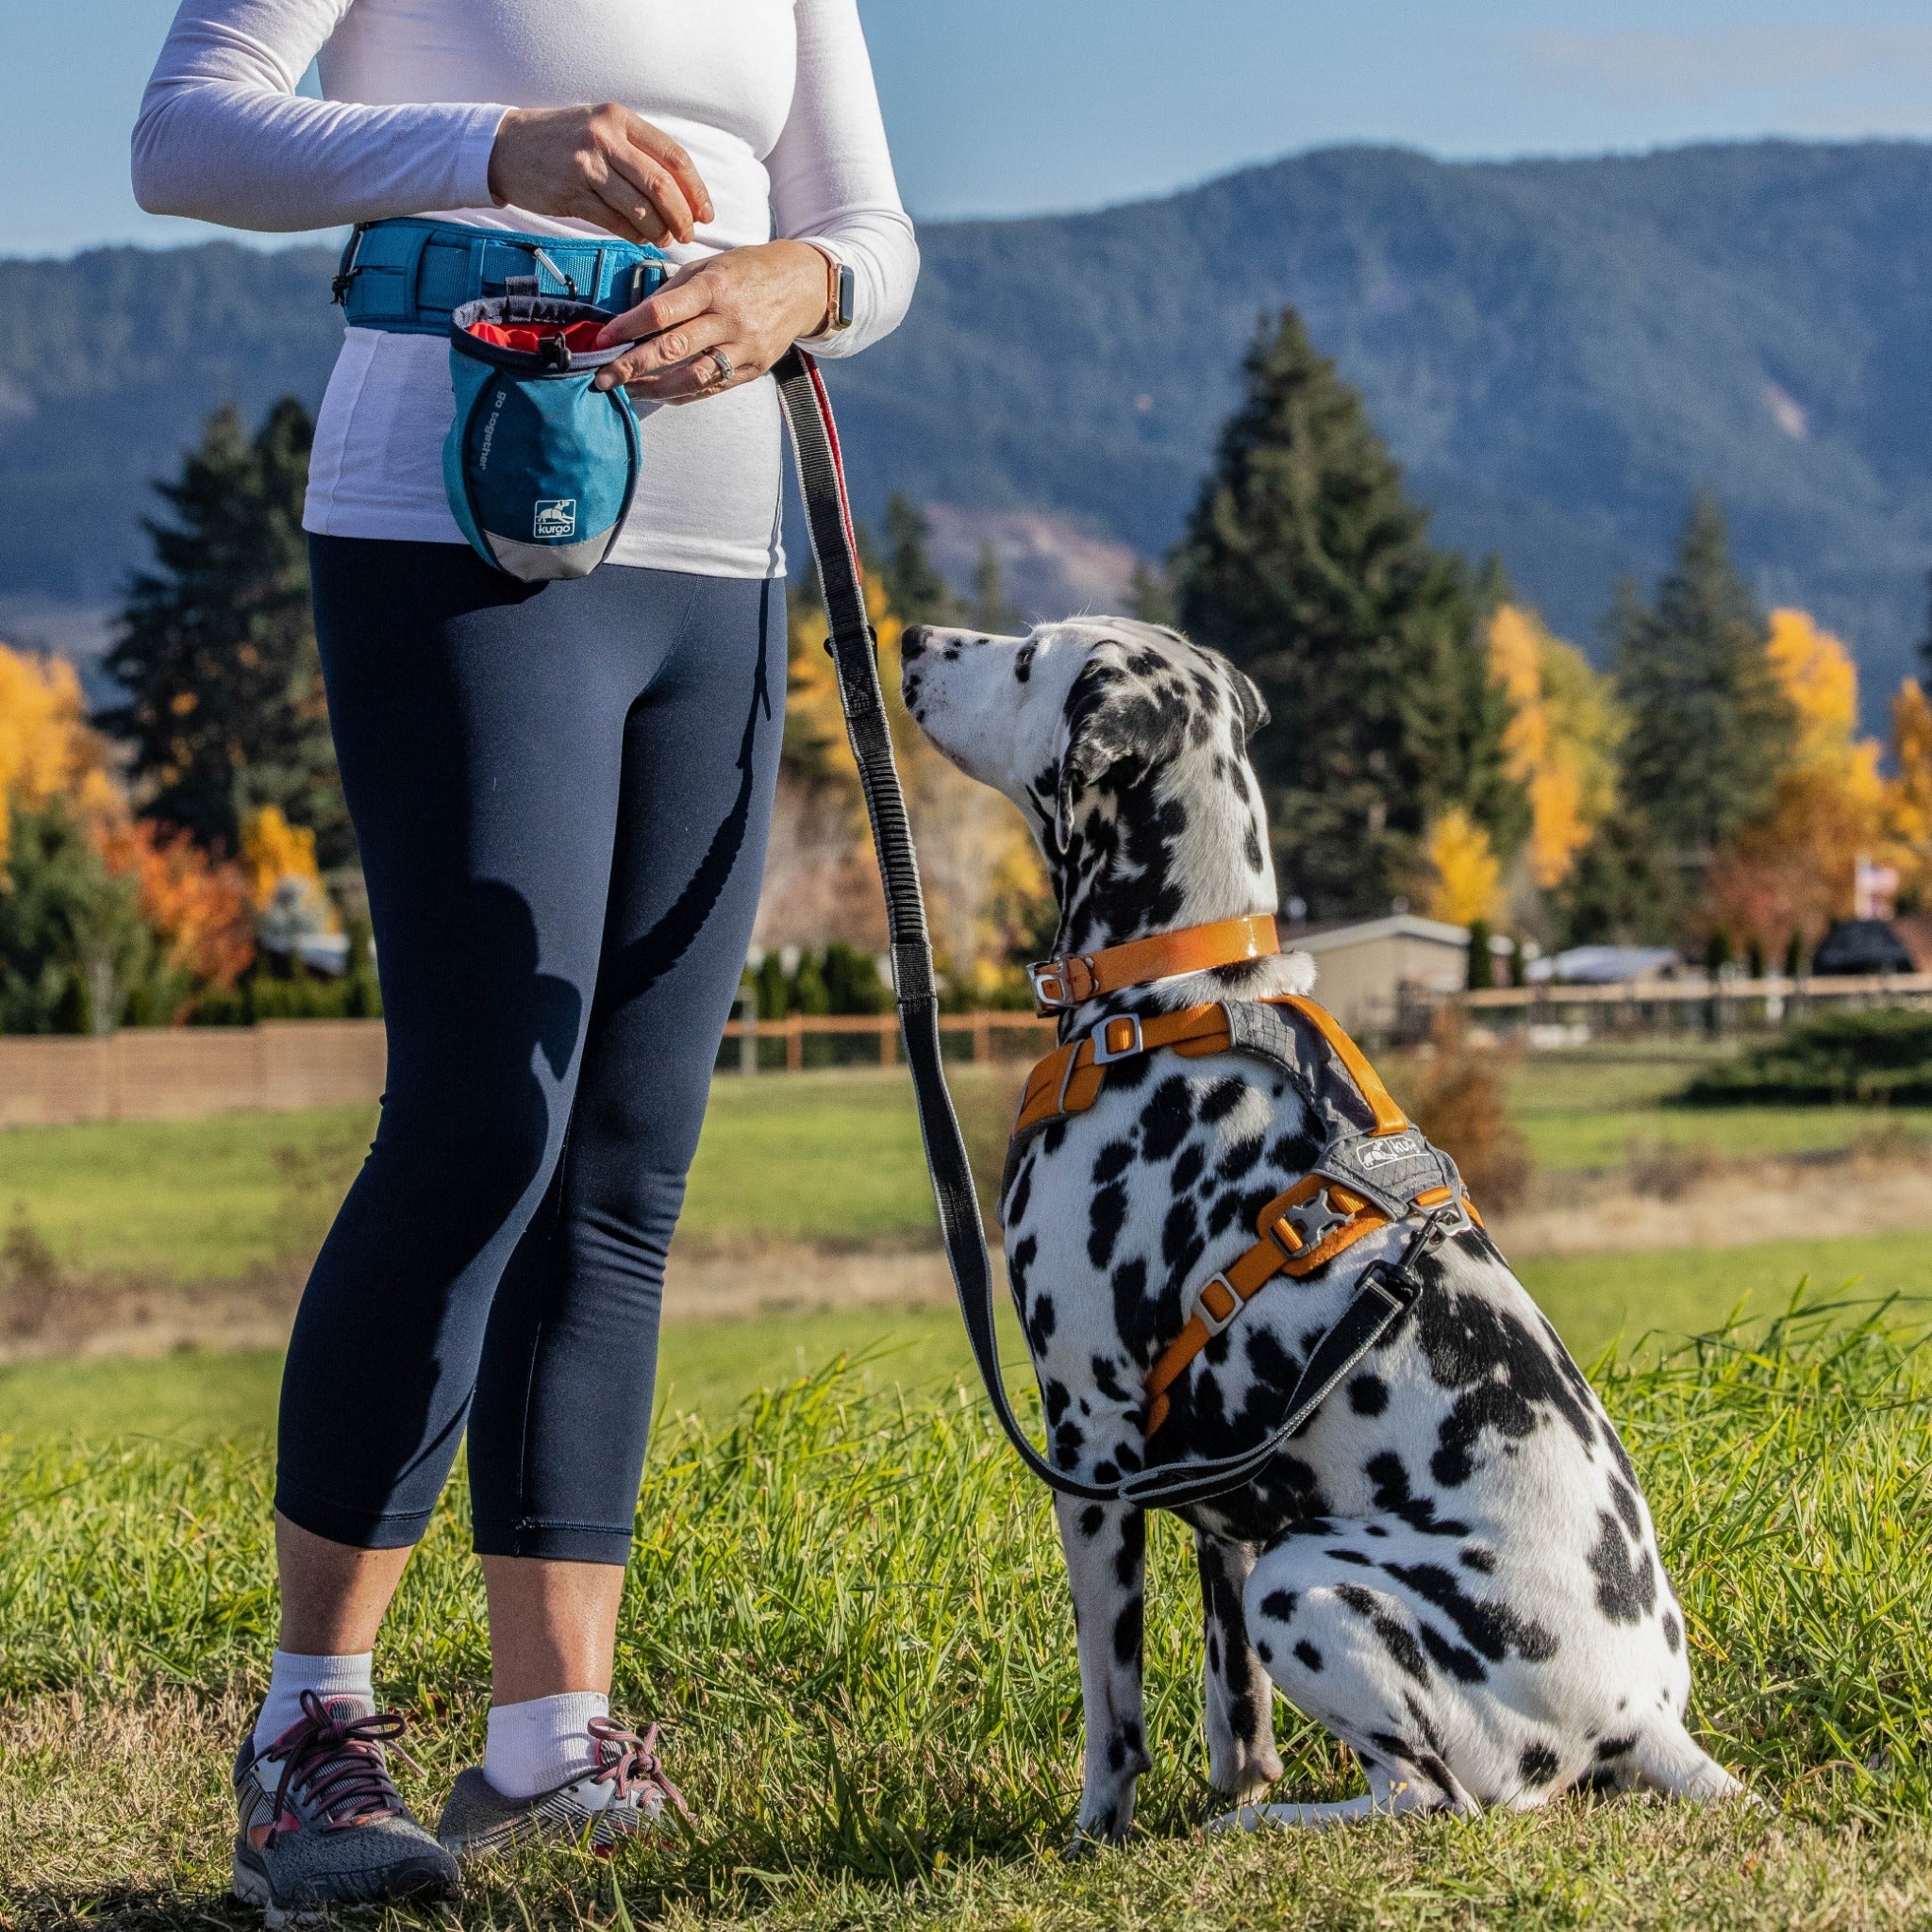 Kurgo On-Trail Running Belt, Hüftgurt mit Trinkflasche und zwei Leinenhaken